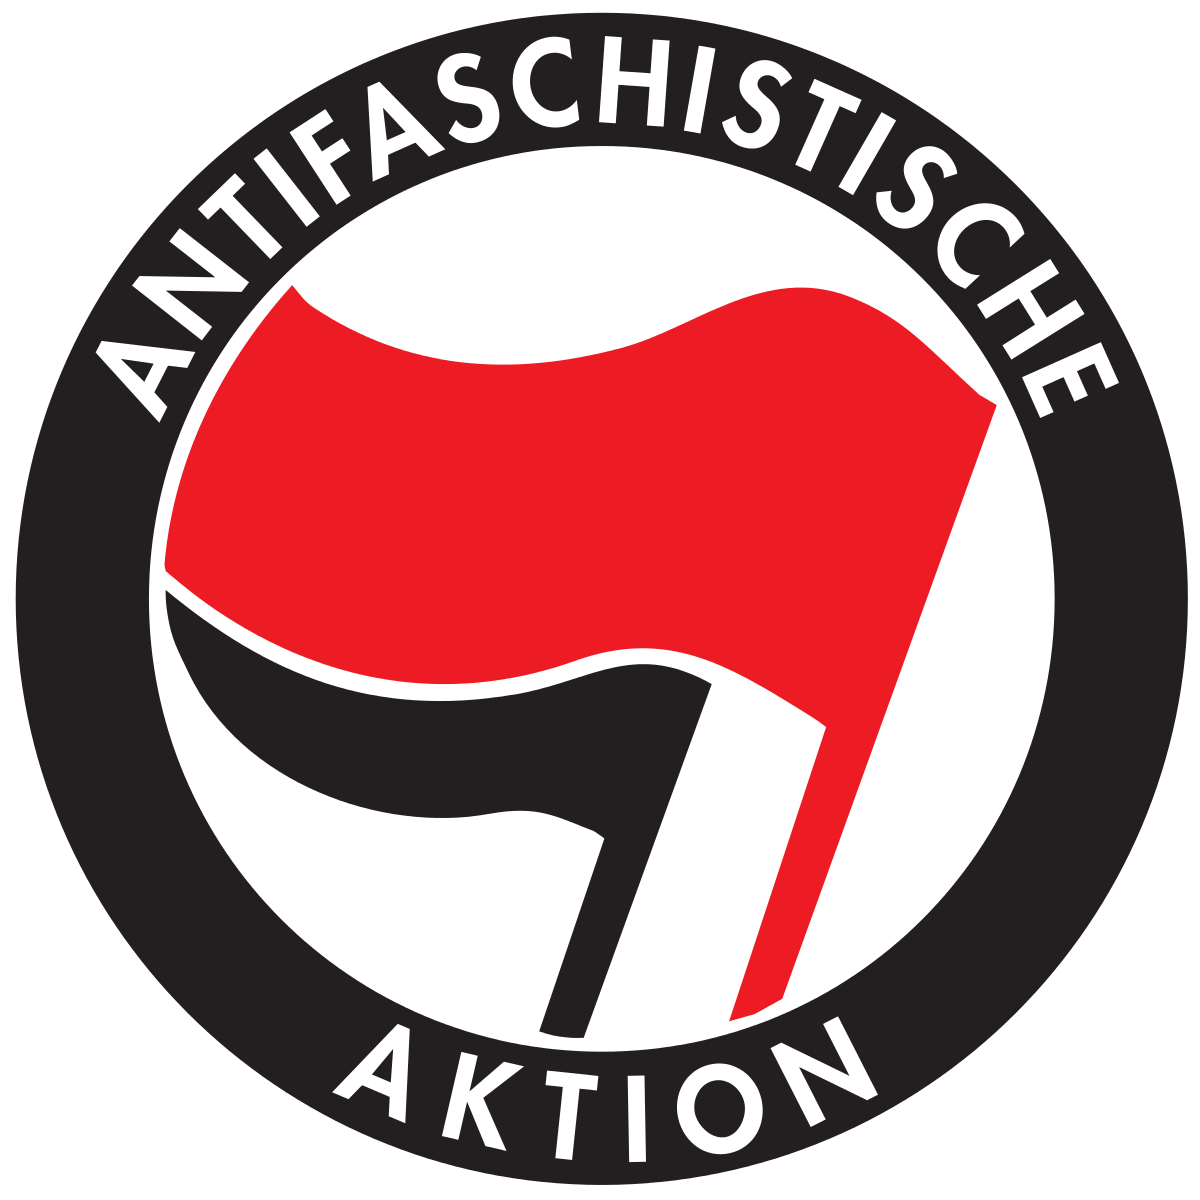 英語・ドイツ語で「反ファシスト」を意味する単語